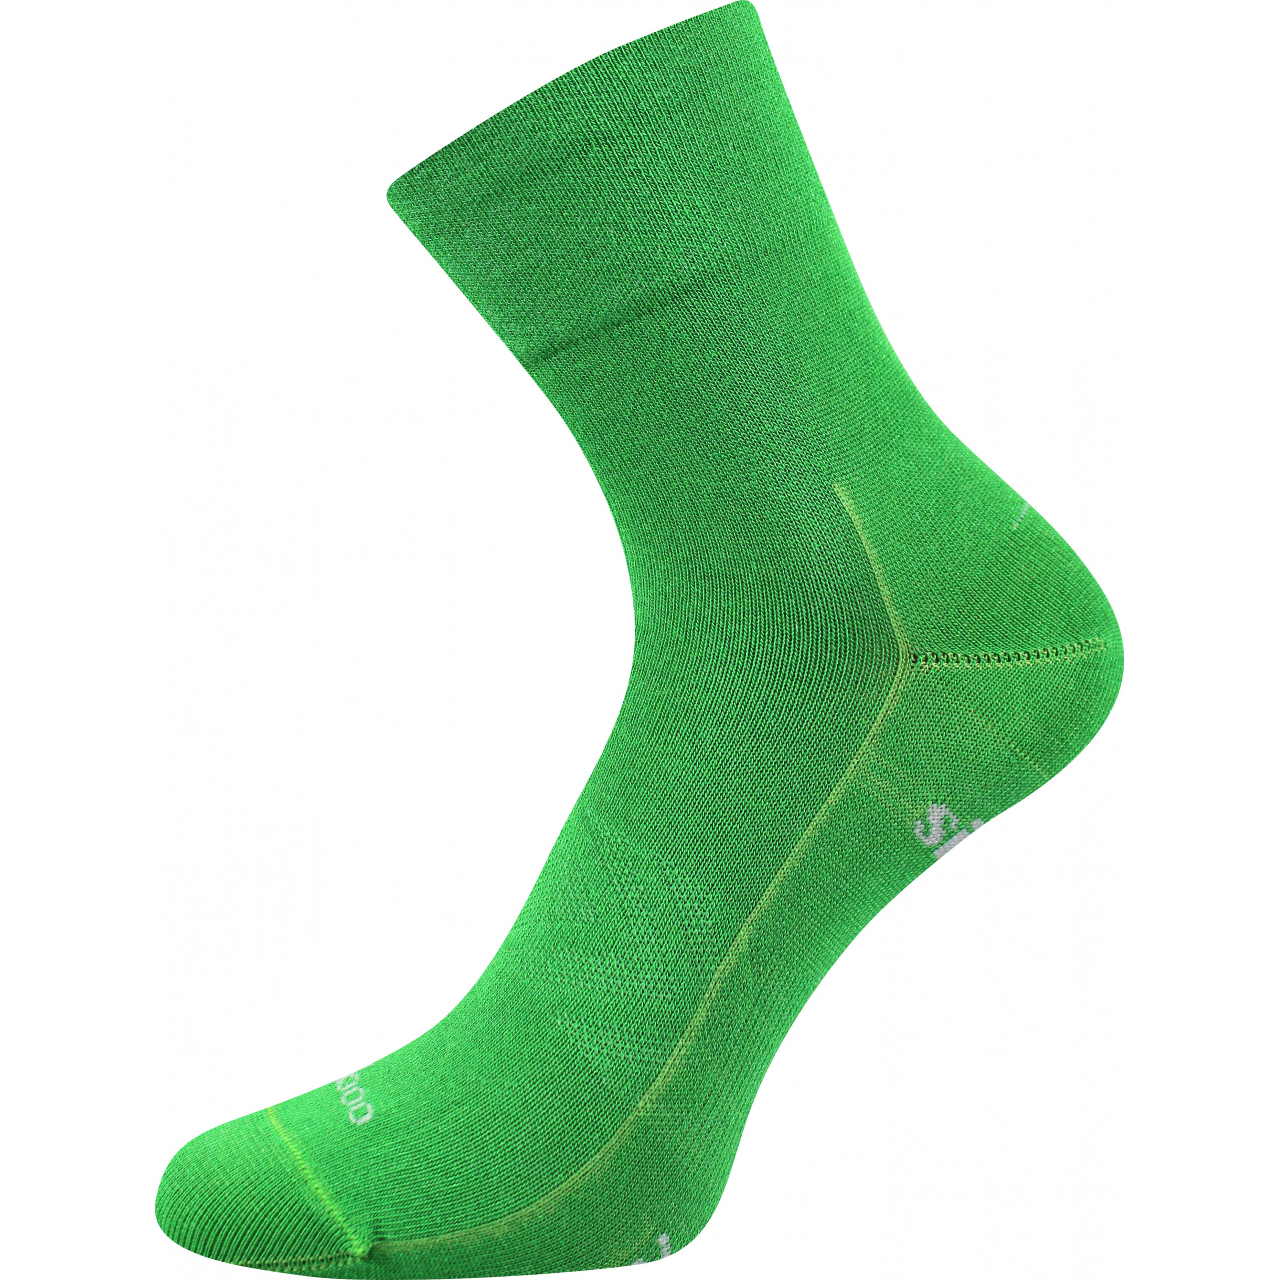 Ponožky sportovní unisex Voxx Baeron - zelené, 43-46